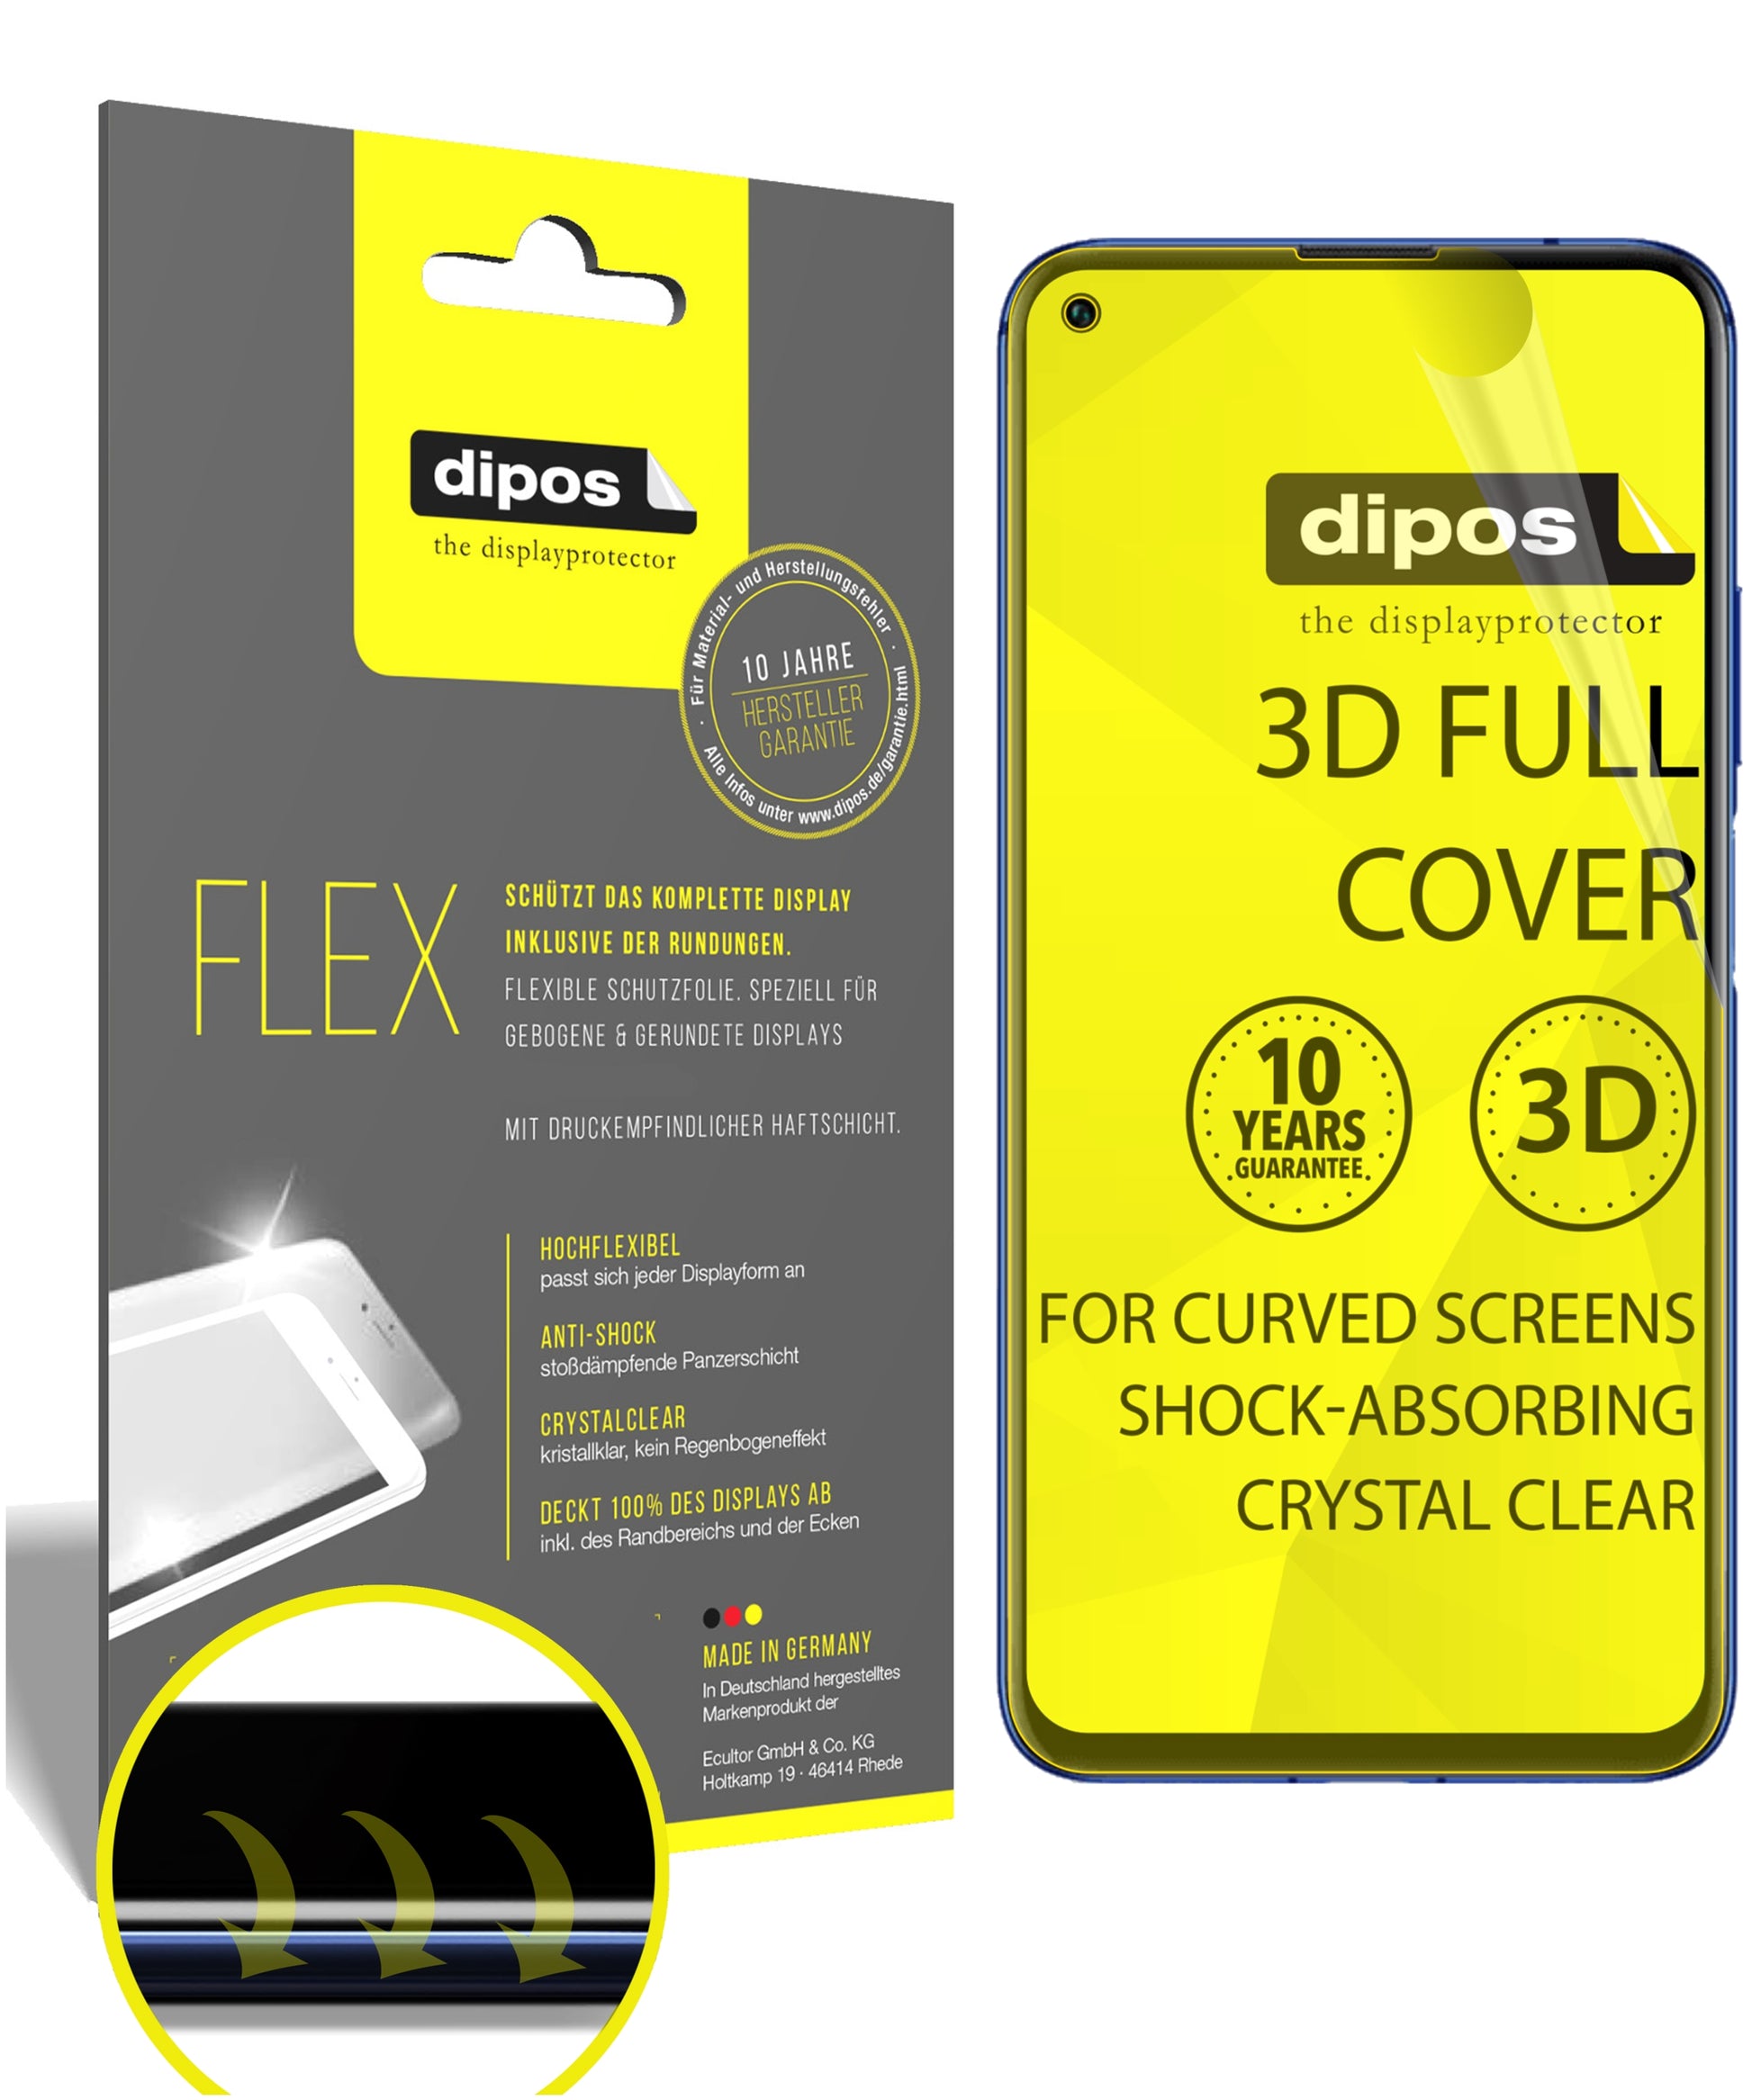 3D Full Cover Displayschutzfolie: Case-freundlicher Schutz mit perfekter Passform für dein Display. 